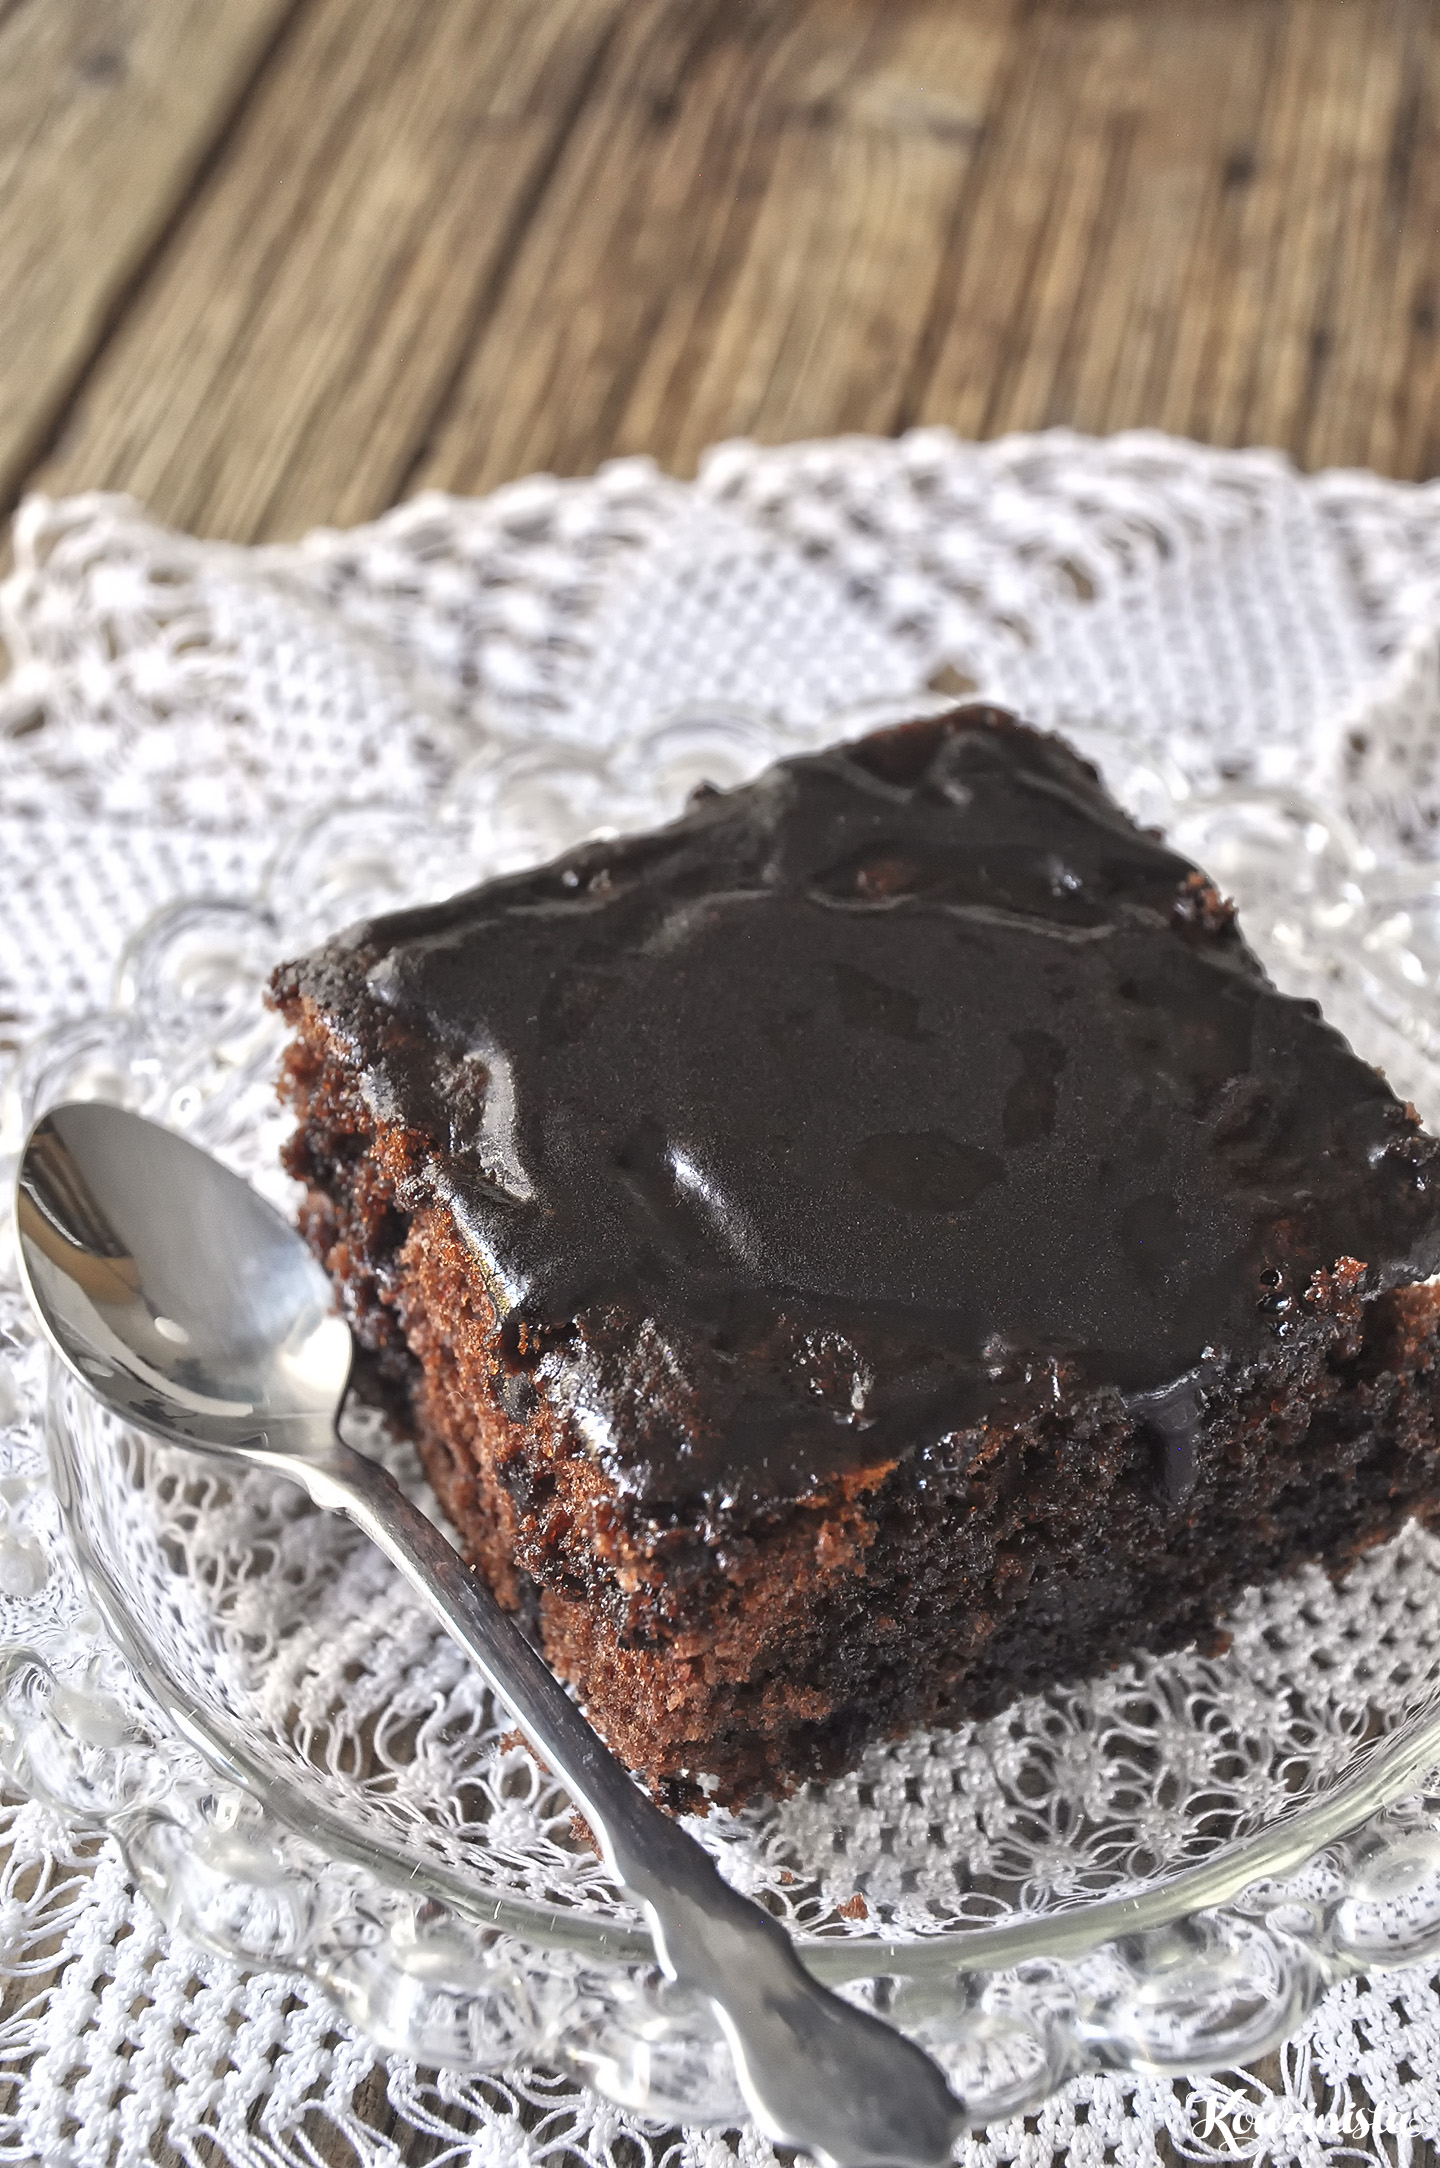 Σοκολατένιο κέικ βραστό ή κατσαρόλας ή μελαχροινή / Boiled chocolate cake